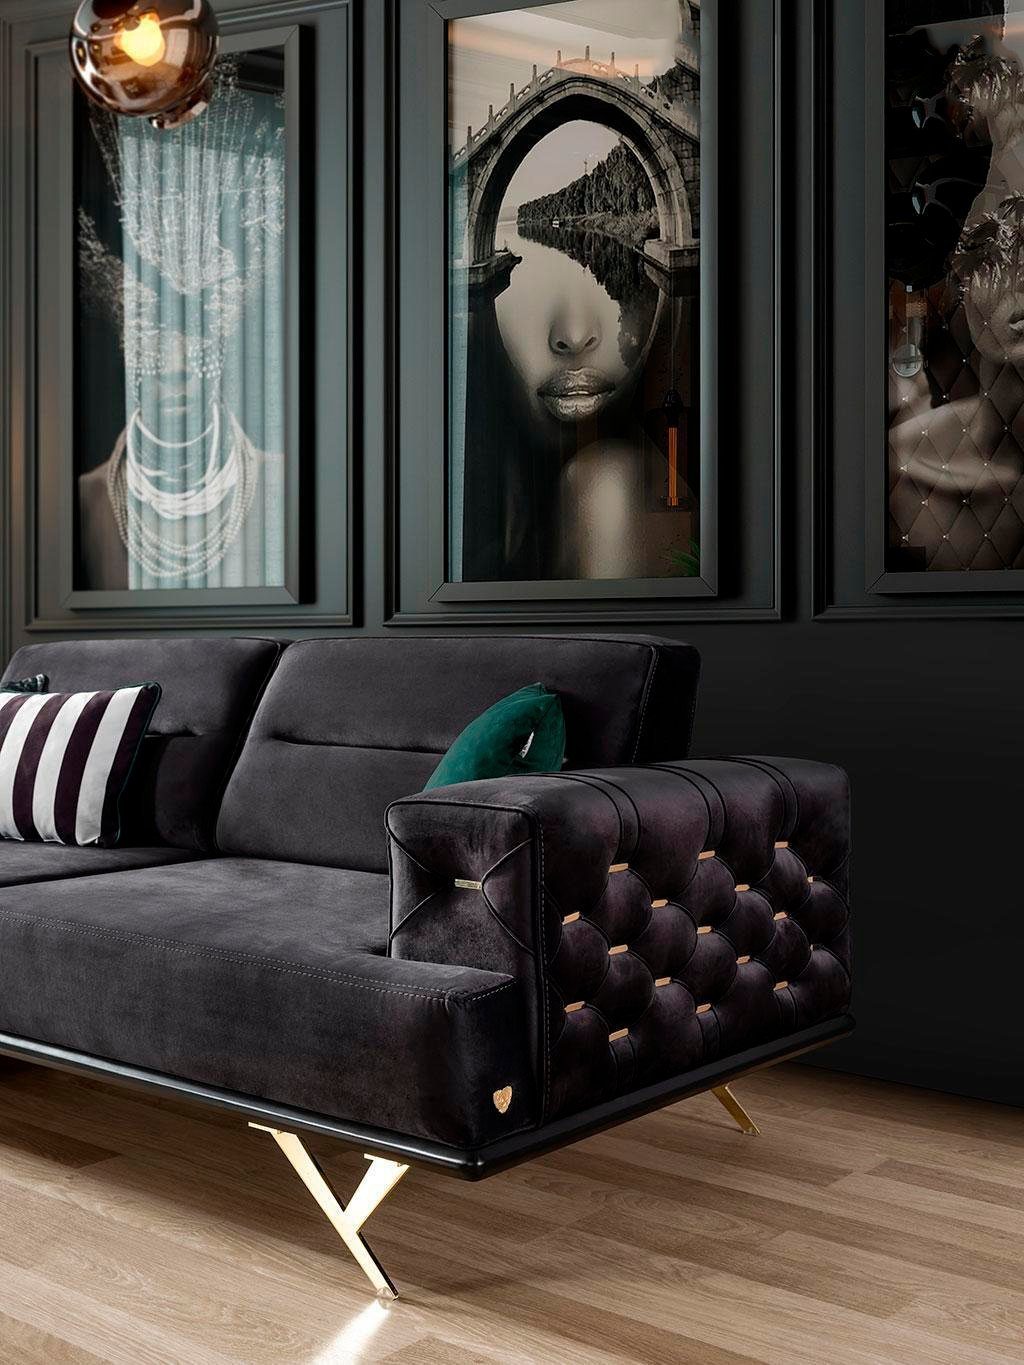 Textilmöbel Couch Luxus, Edelstahl JVmoebel Europe Teile, Wohnzimmer in 1 Sofa Sofa Moderne Made Schwarzes